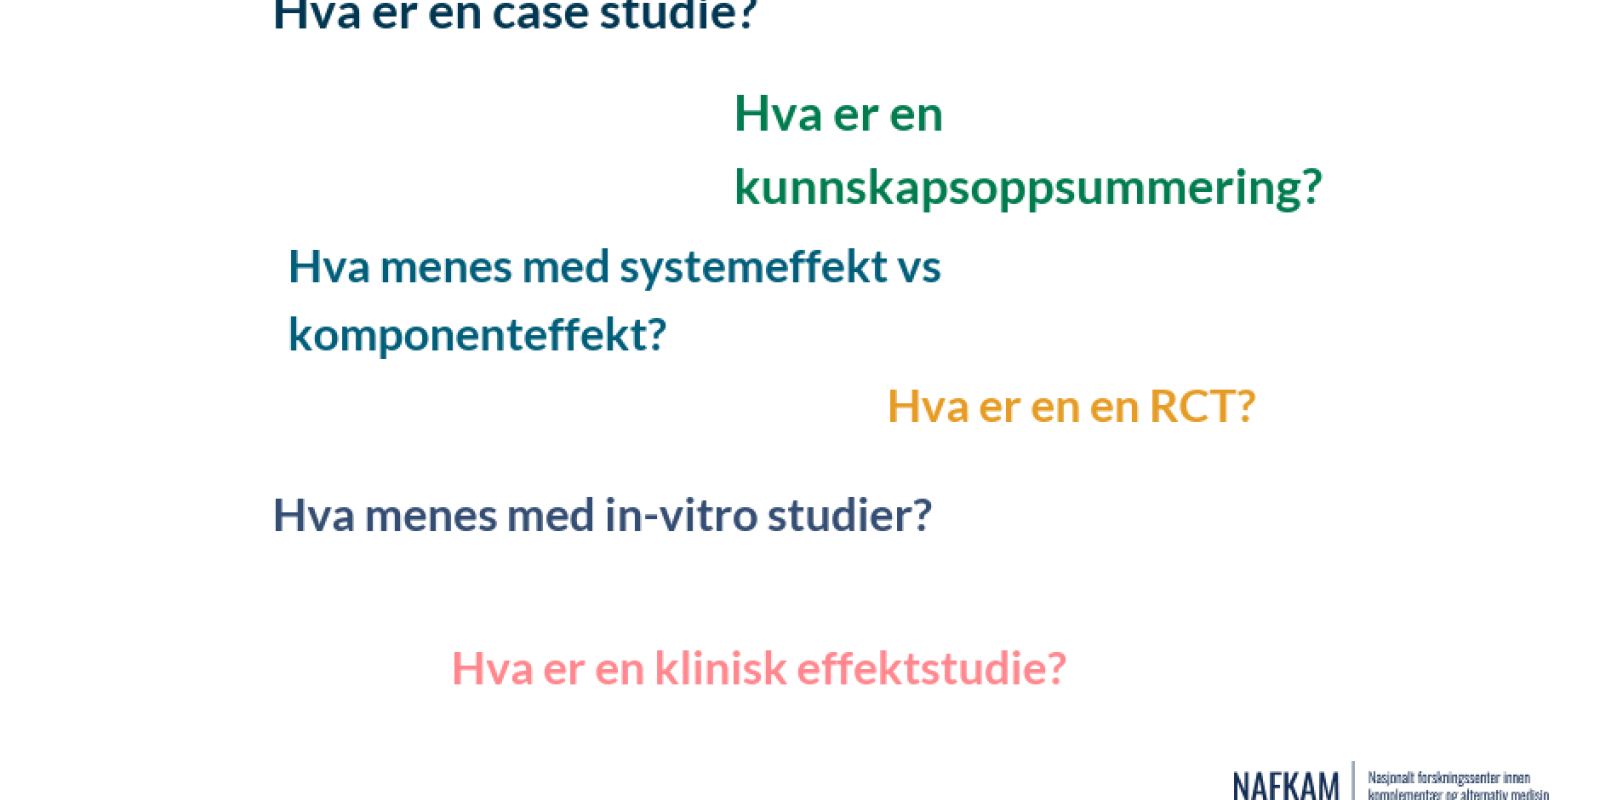 Hva er en case studie, en RCT og in-vitro studier? Illustrasjon laget i Infogram av Tine Lilleågrd Bergli 2020.